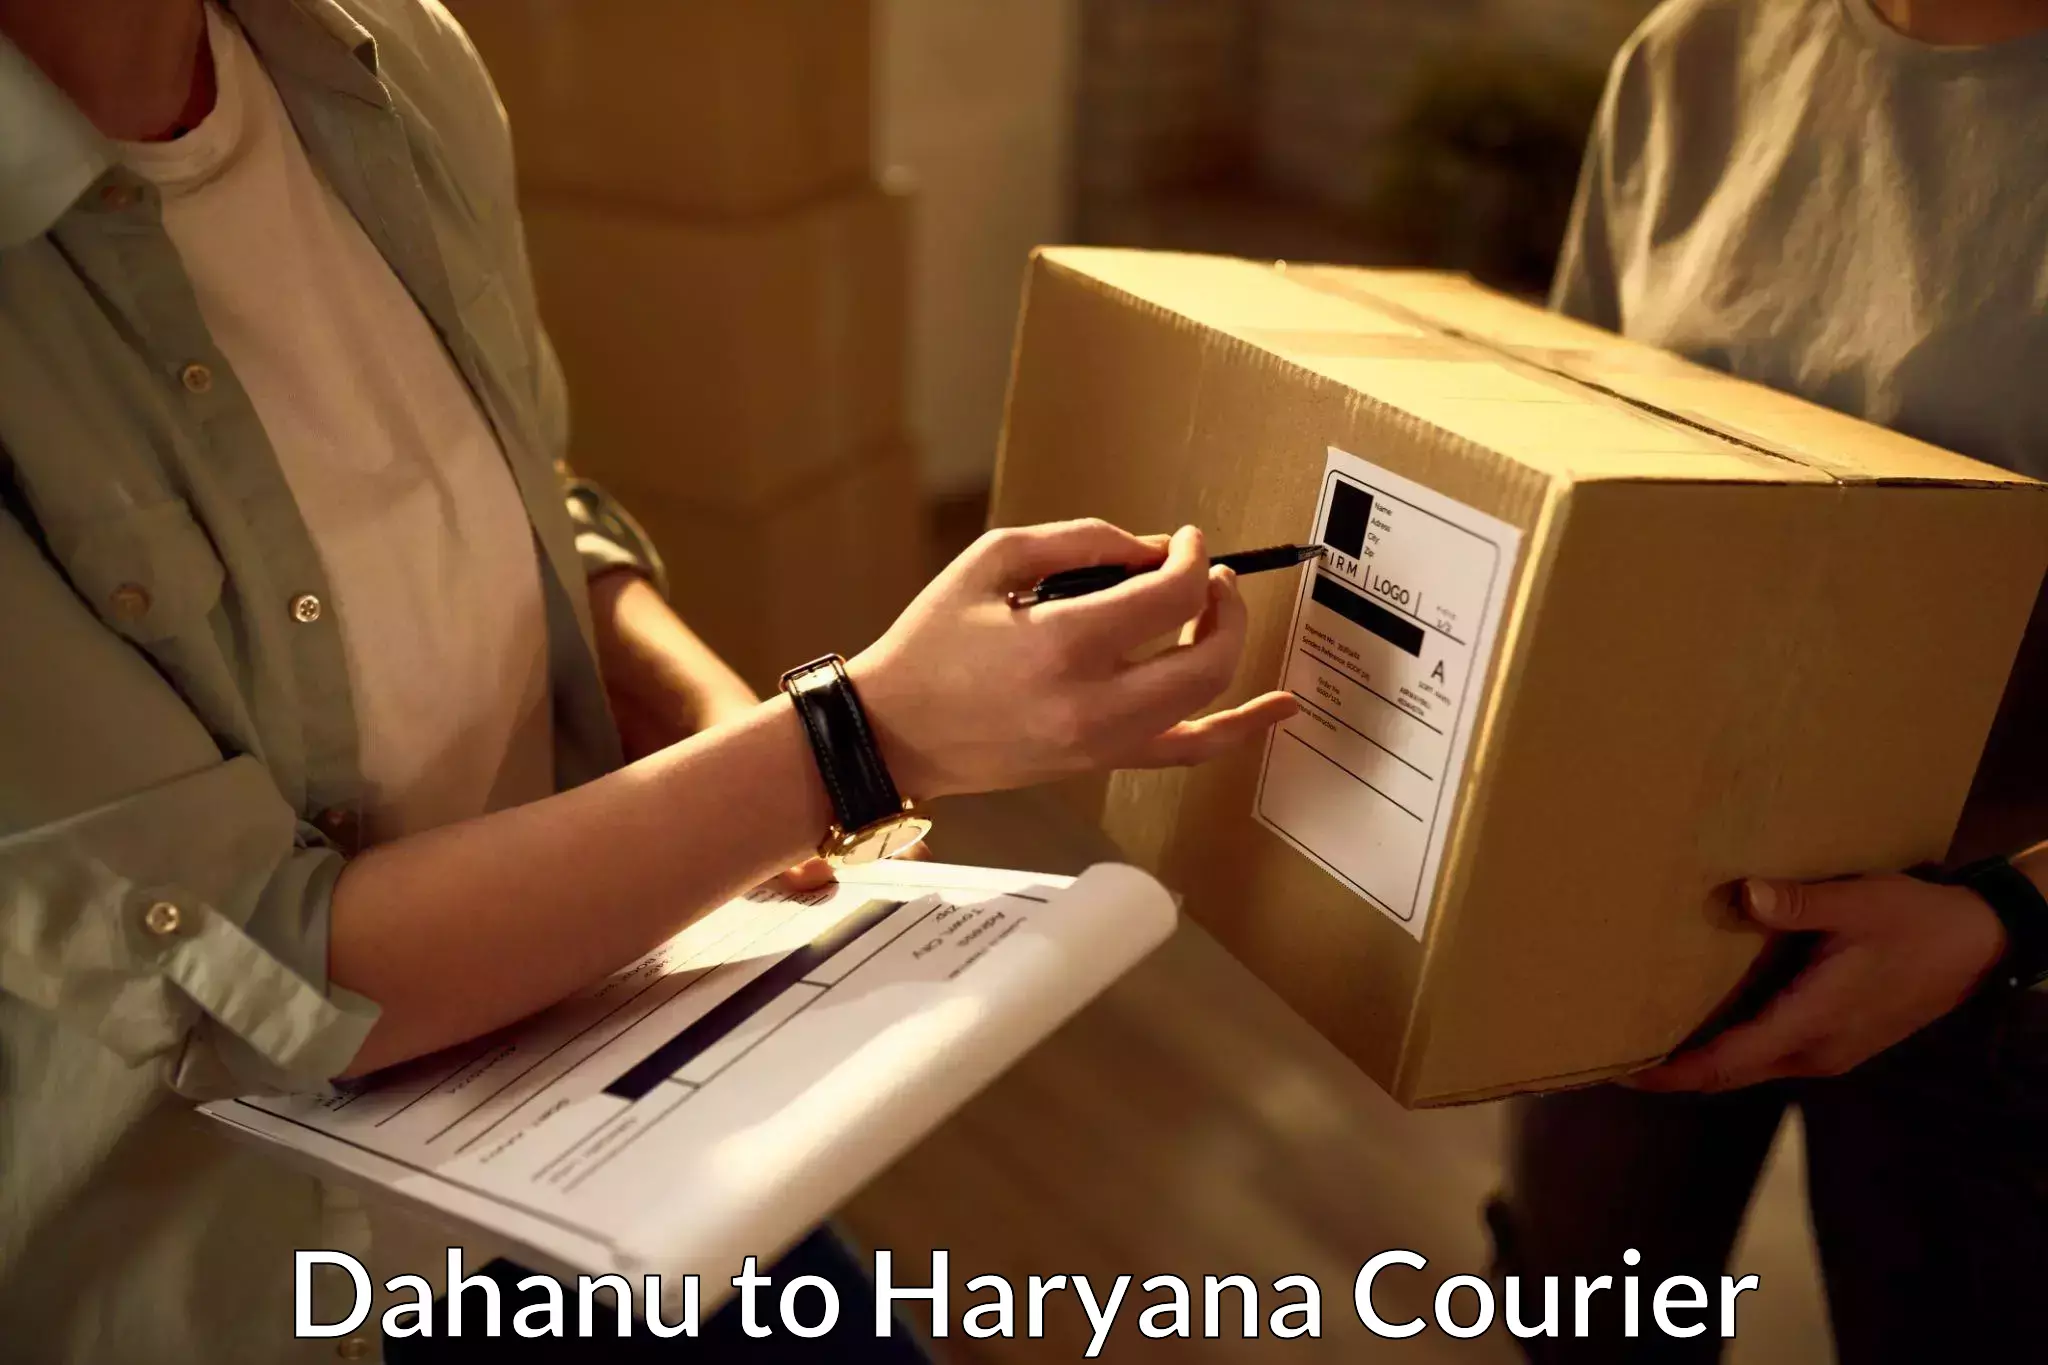 24/7 courier service Dahanu to Haryana